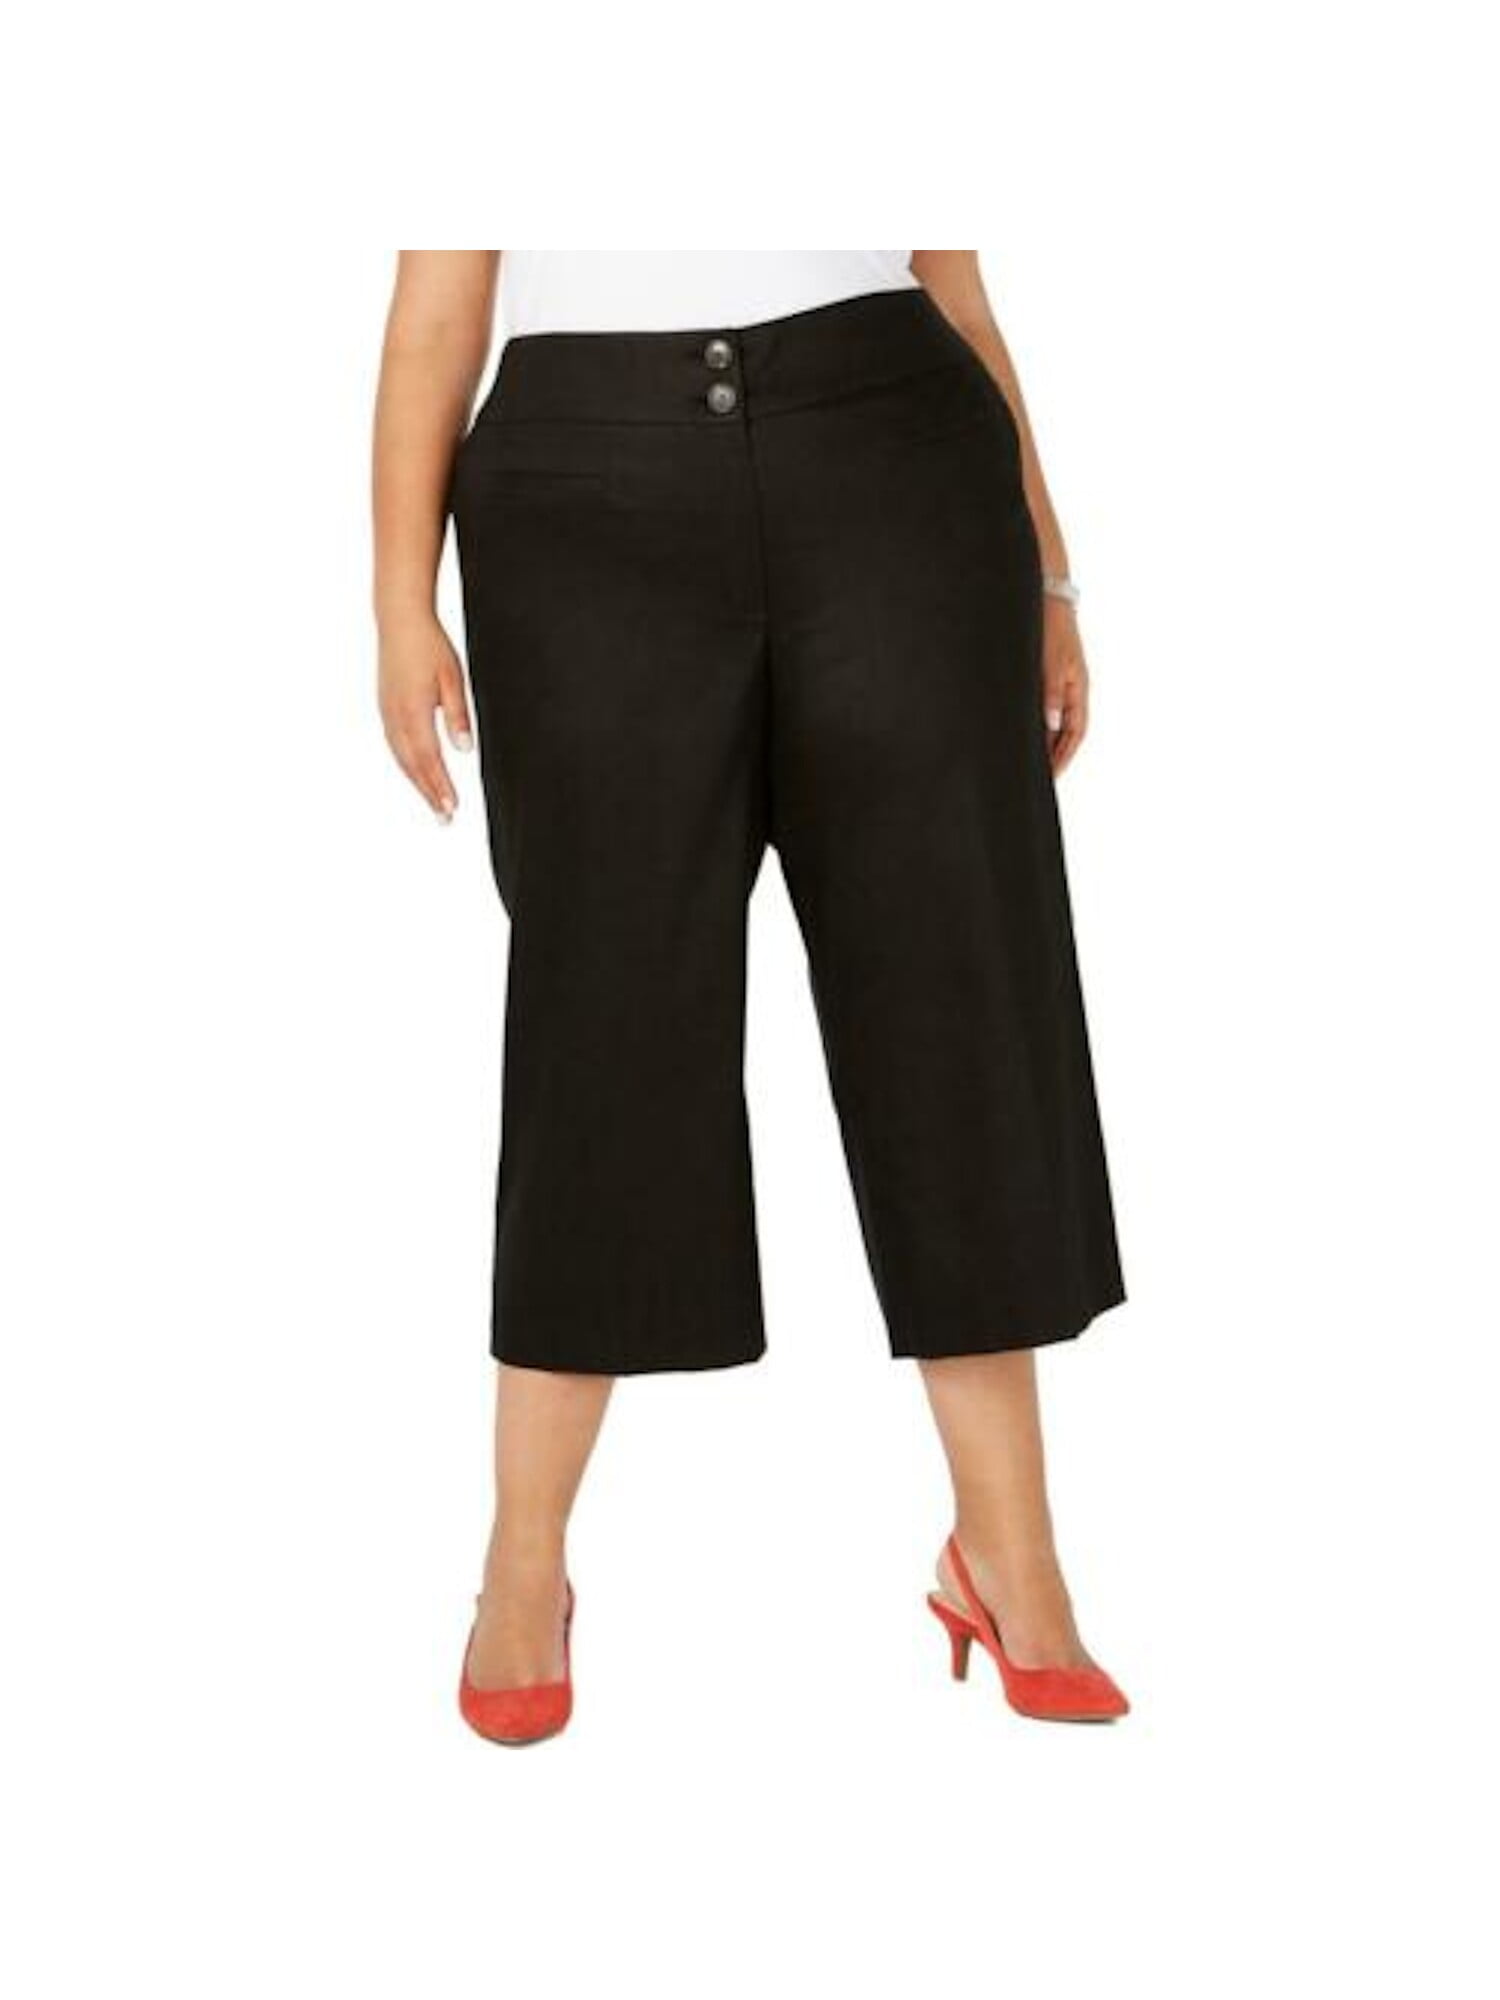 size 14w pants